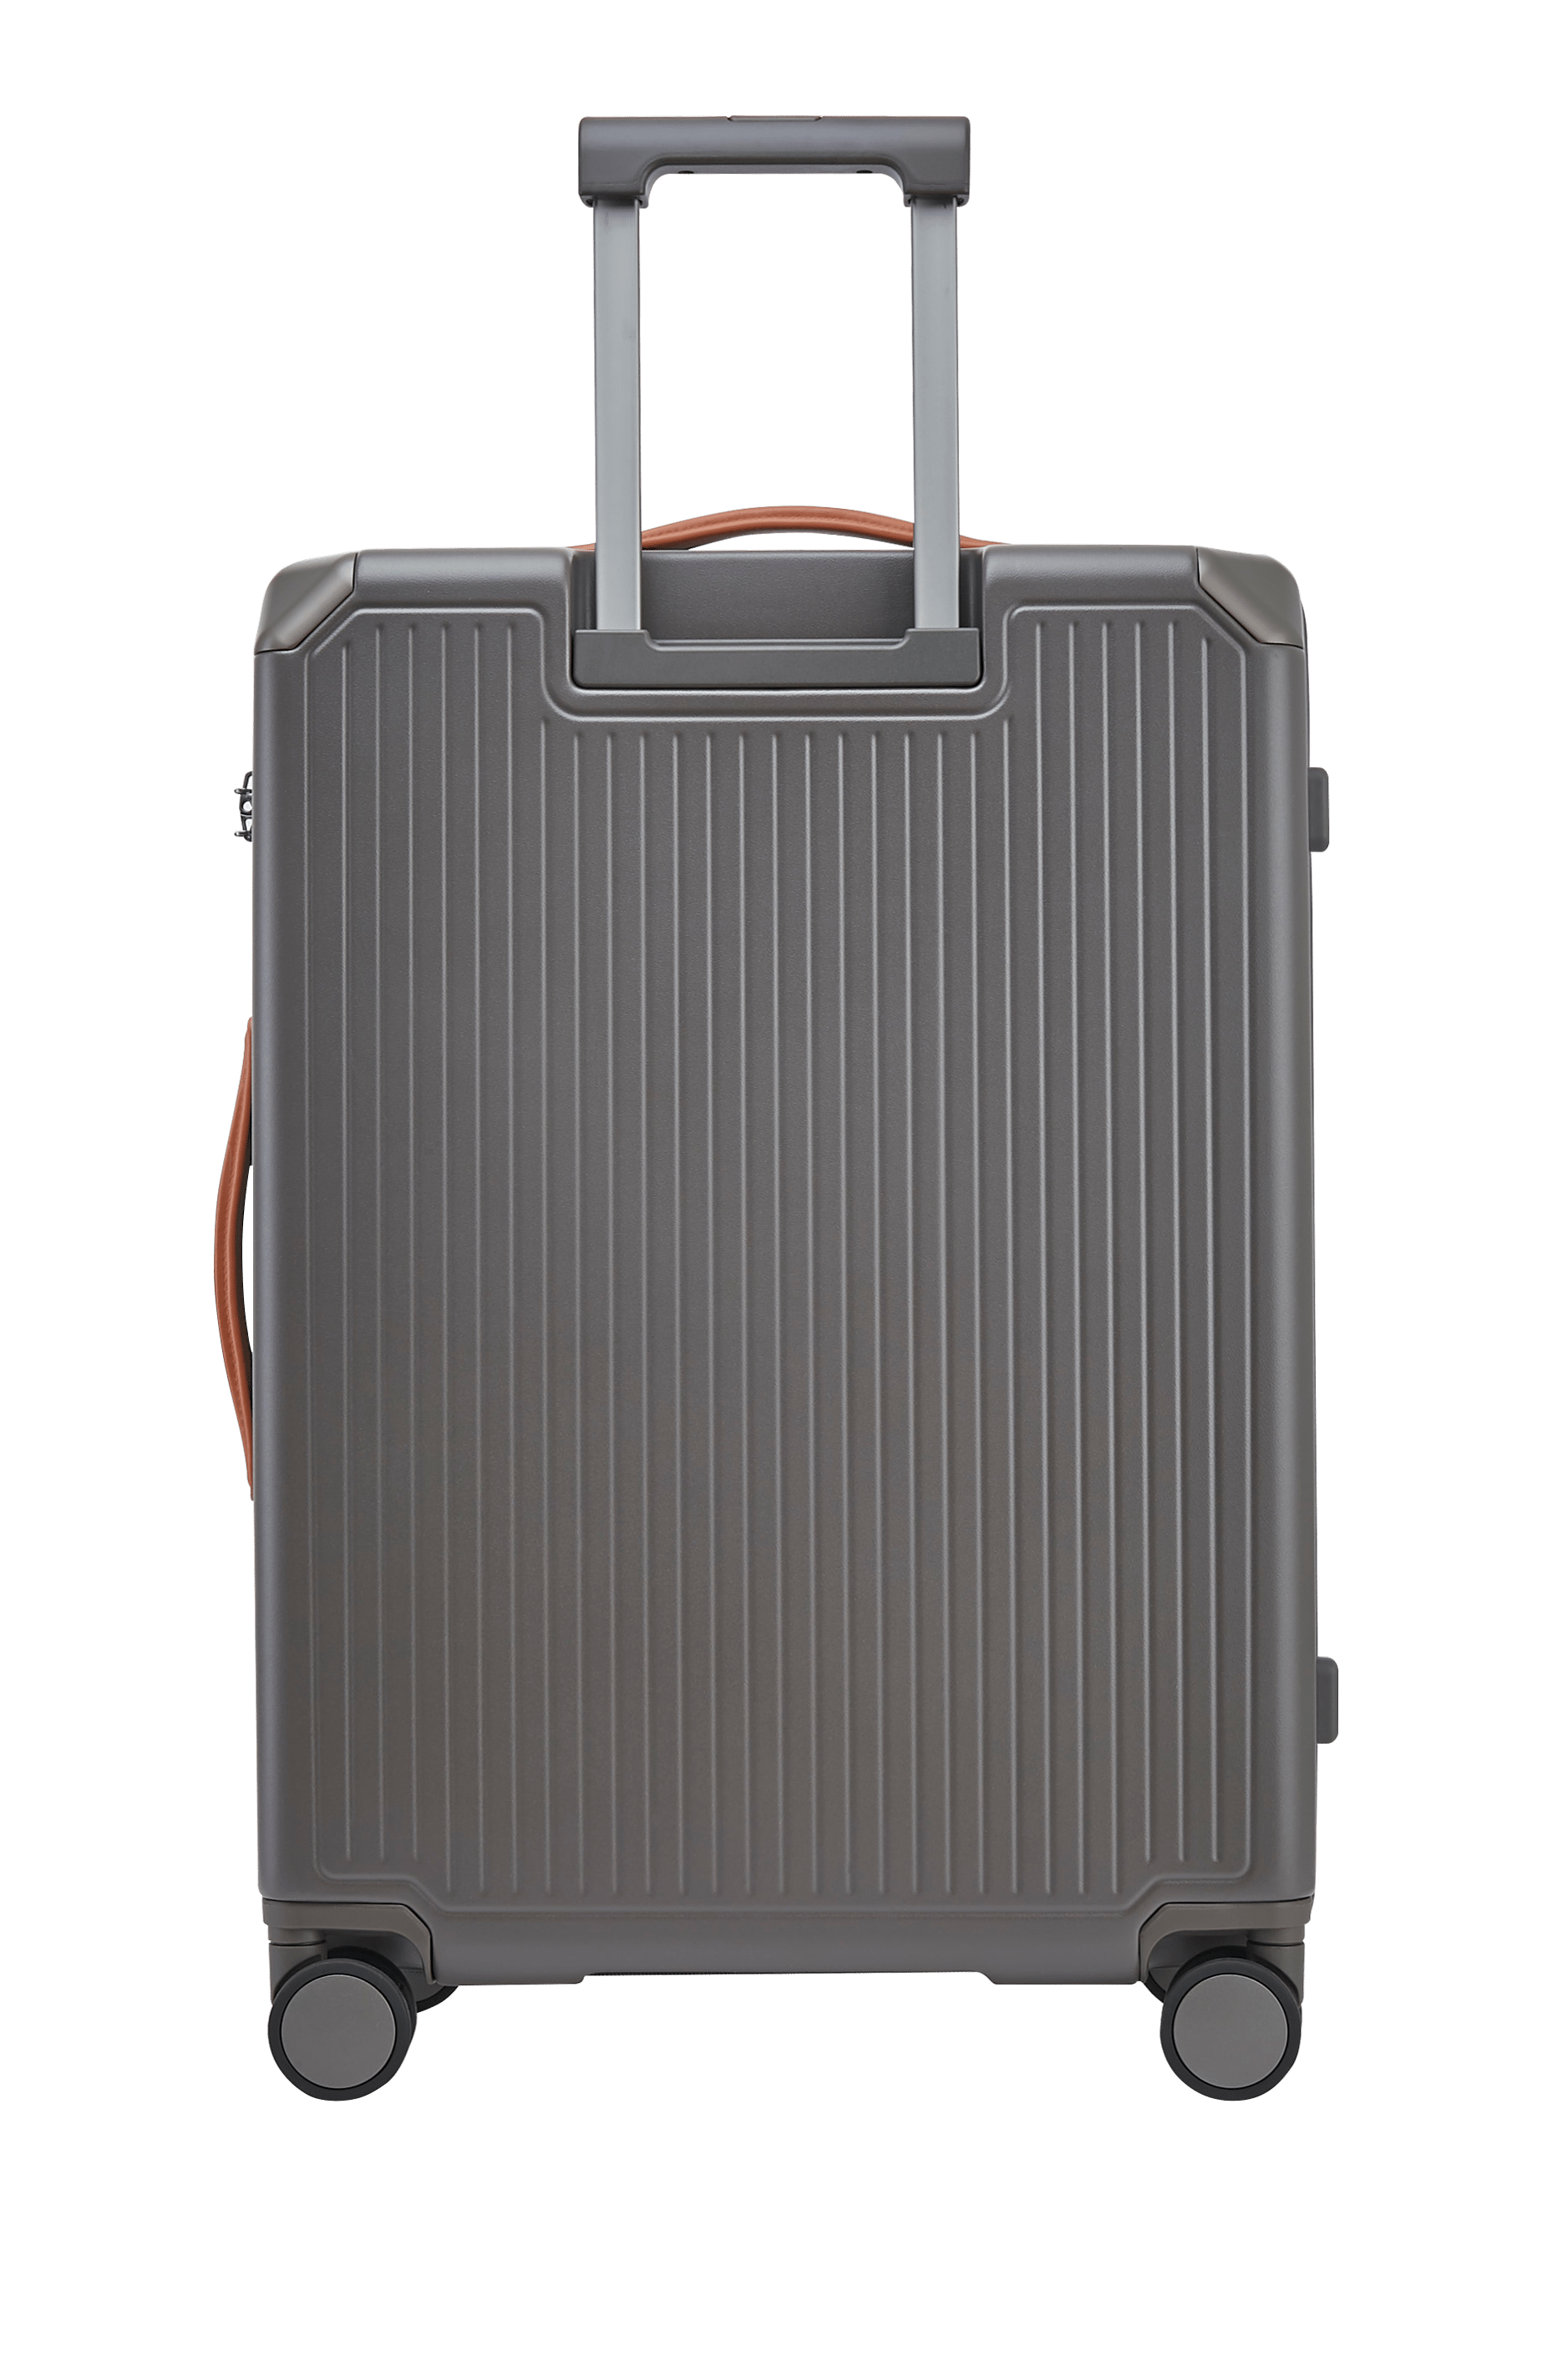 Echolac Shogun 24" 4 Double Wheel Check-In Luggage Trolley Grey - PC148 24 Grey